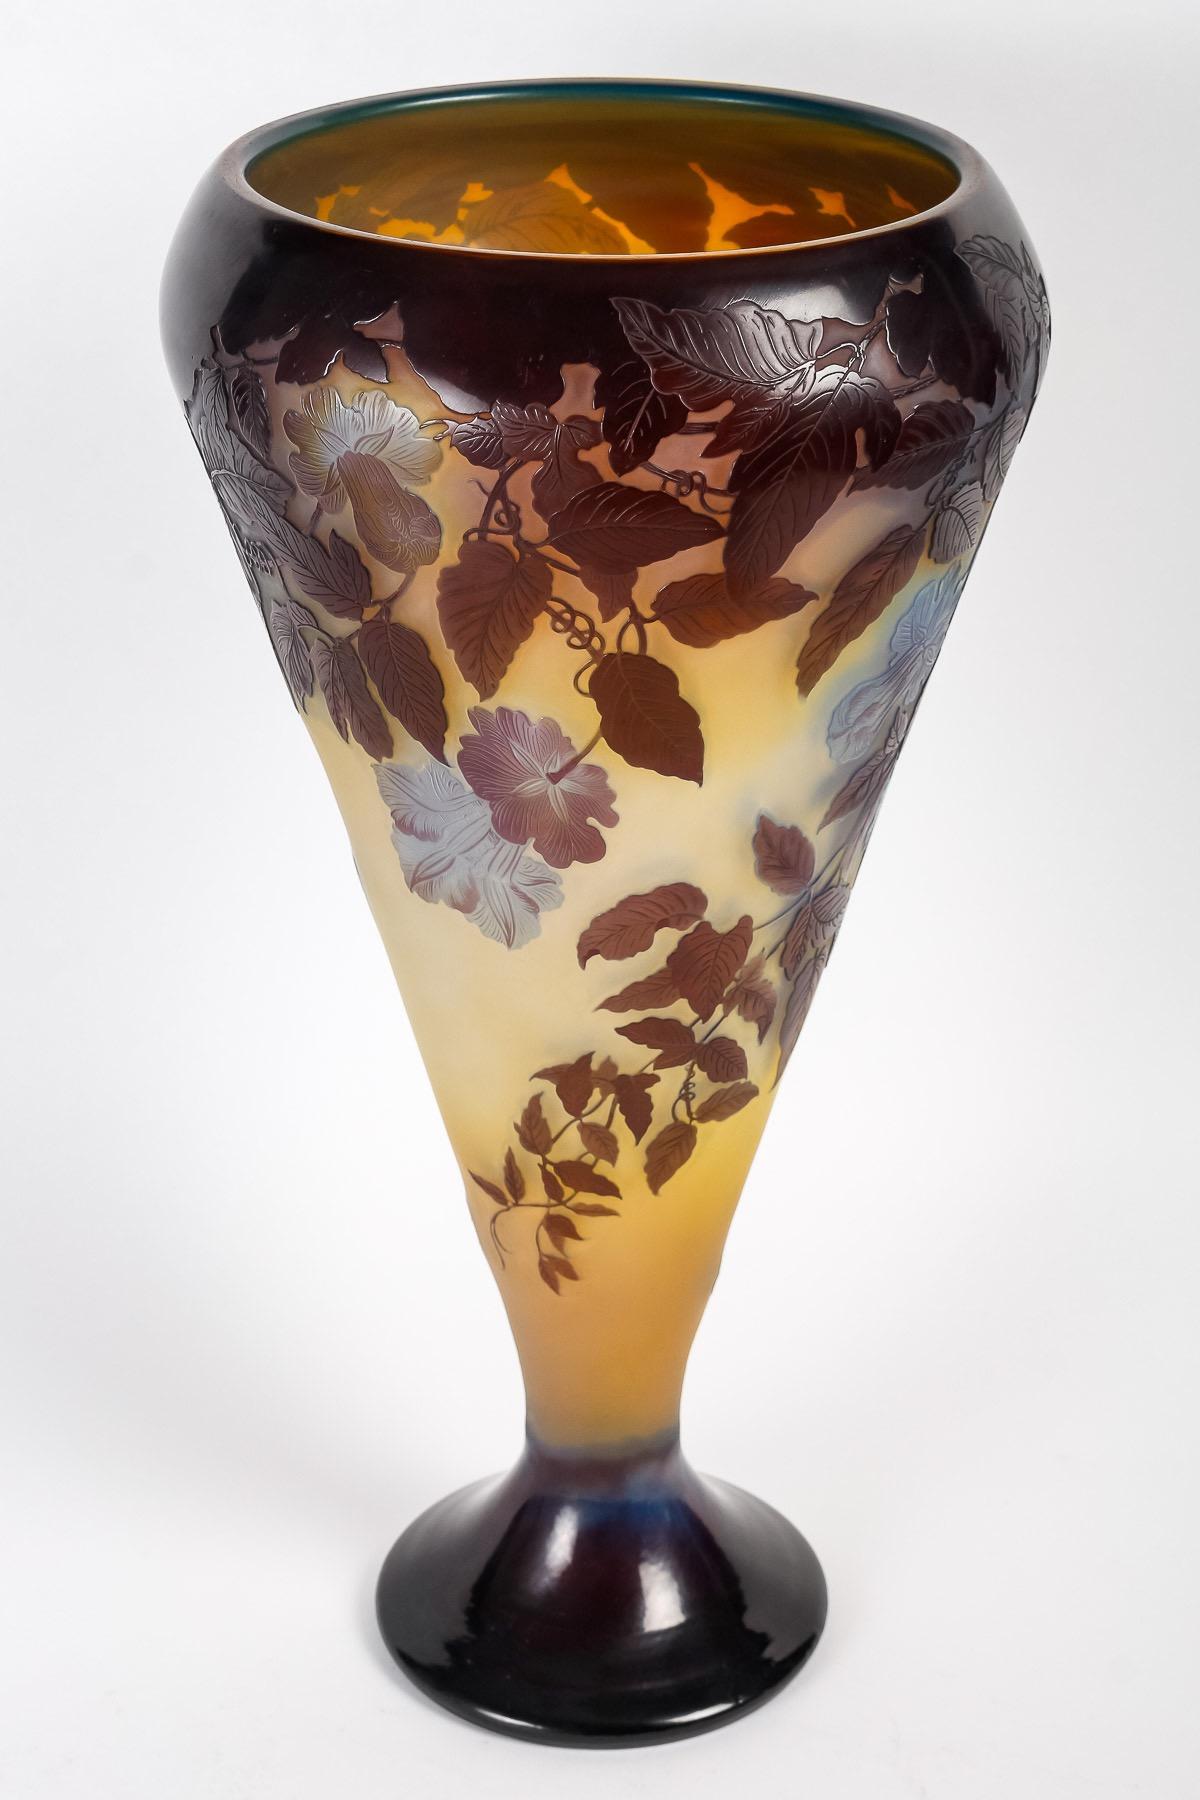 Émile Gallé (1846-1904)
Impressionnant vase en verre camée français de Gallé 
Grand vase de forme conique sur piédestal 
Verre serti, opalescent, incolore, jaune et bleu, motif gravé à l'acide avec des fleurs 